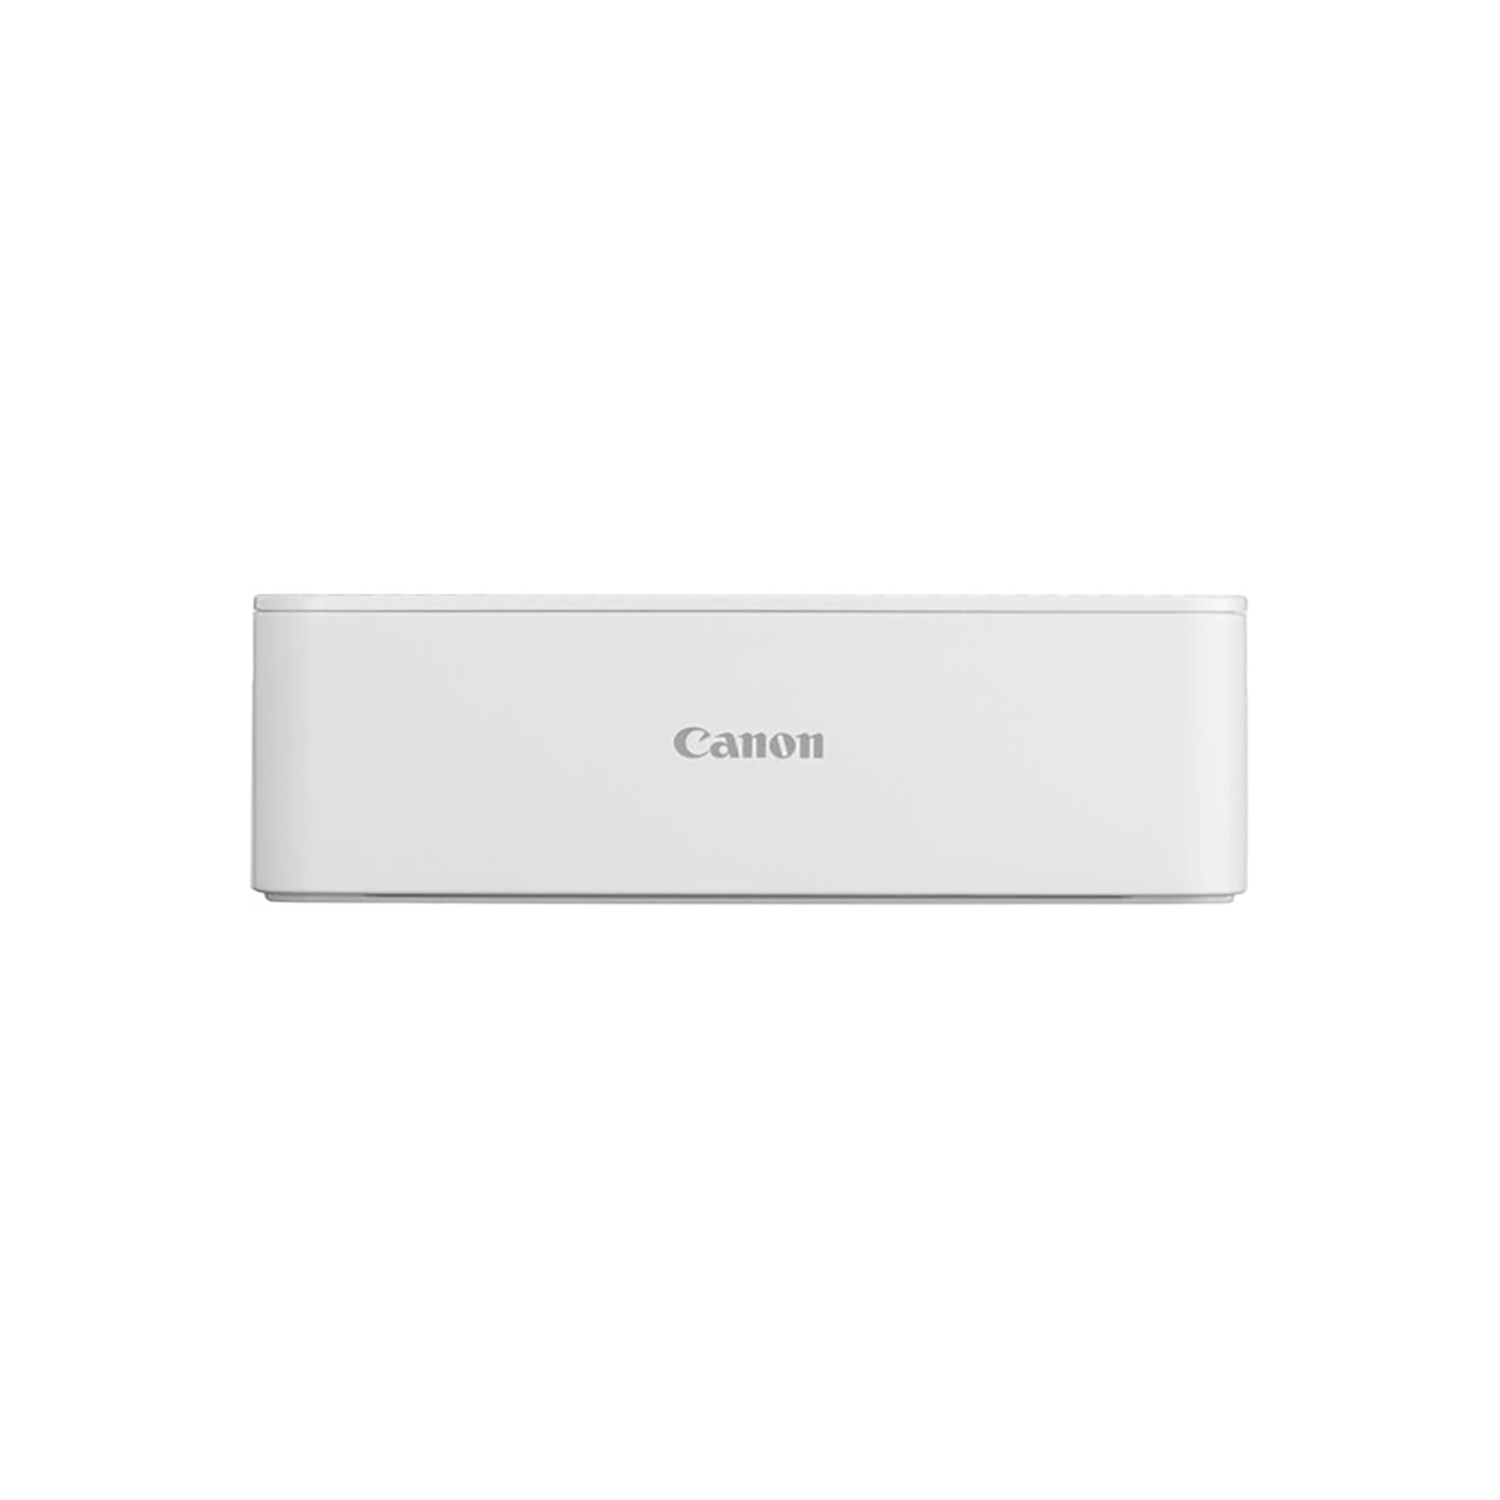 CANON SELPHY CP1500 PRINTER WHITE